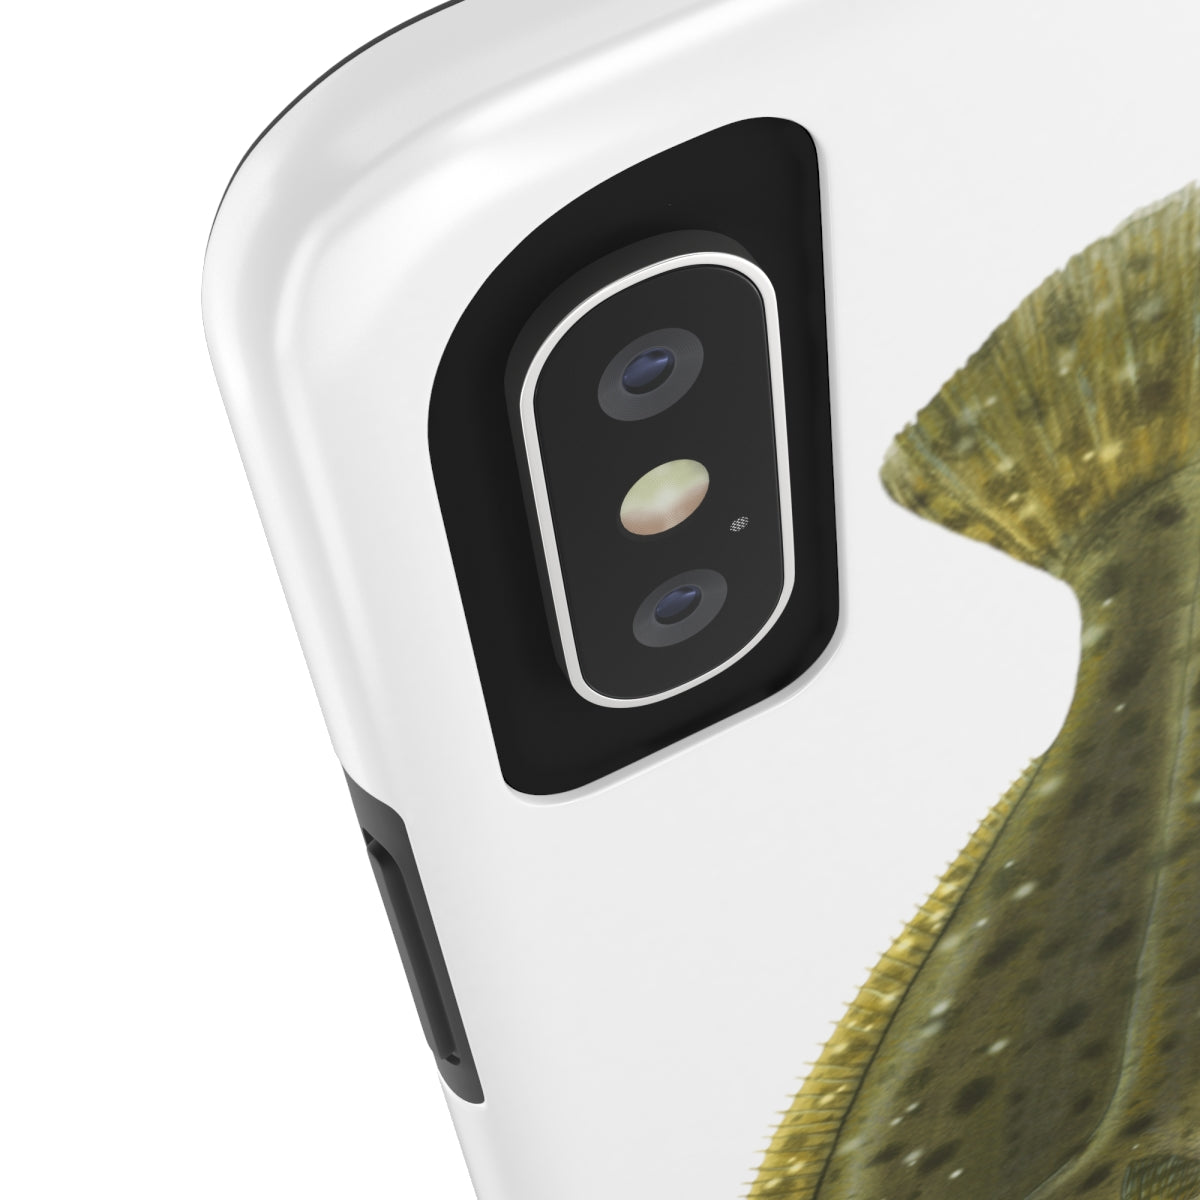 Fluke/ Flounder Phone Case (iPhone)